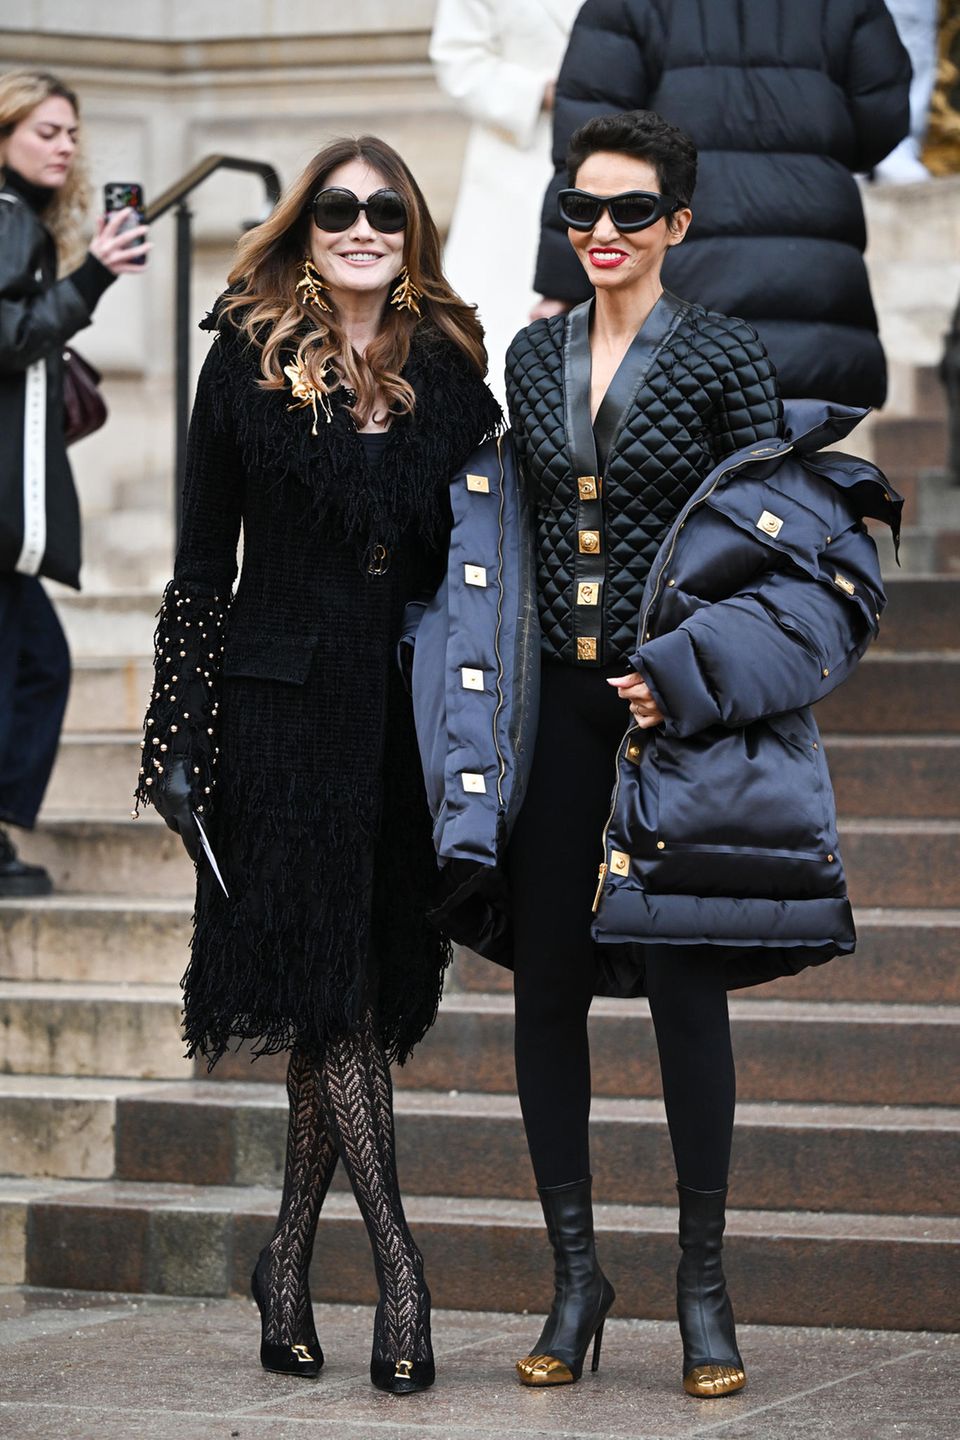 Carla Bruni und Farida Khelfa beweisen mit ihren schwarzen High-Fashion-Looks ihr Können als Fashionistas. Während Carla auf Korallen-Schmuck, Netzstrumpfhose und Fransenmantel setzt, hebt sich Farida mit dickem Outdoor-Mantel und Stepp-Blouson gekonnt von der Masse ab.